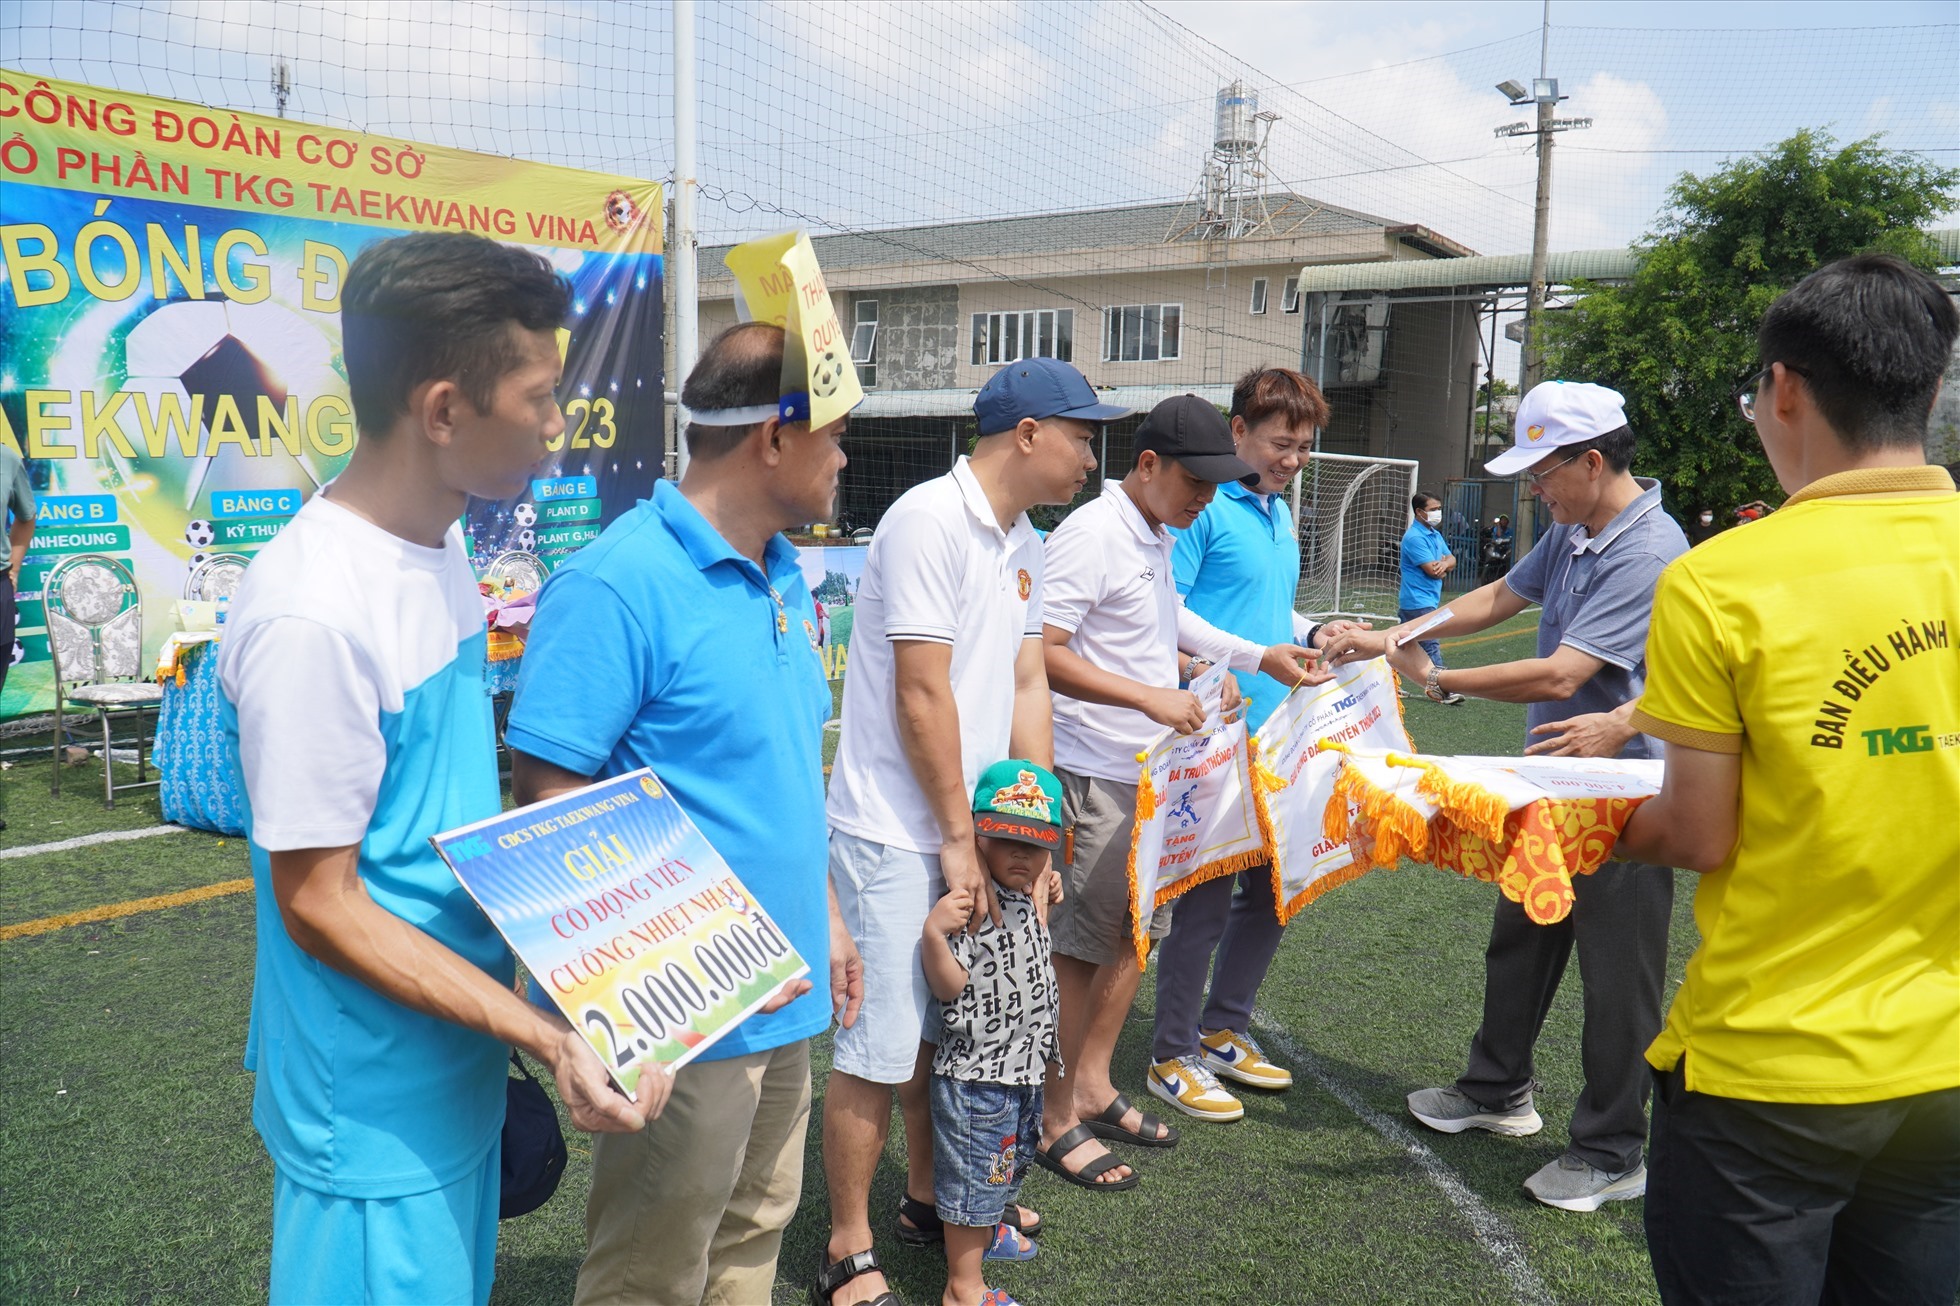 Tổ chức giải bóng đá truyền thống Taekwang Cup với sự tham gia của 21 đội bóng. Ảnh: Hà Anh Chiến